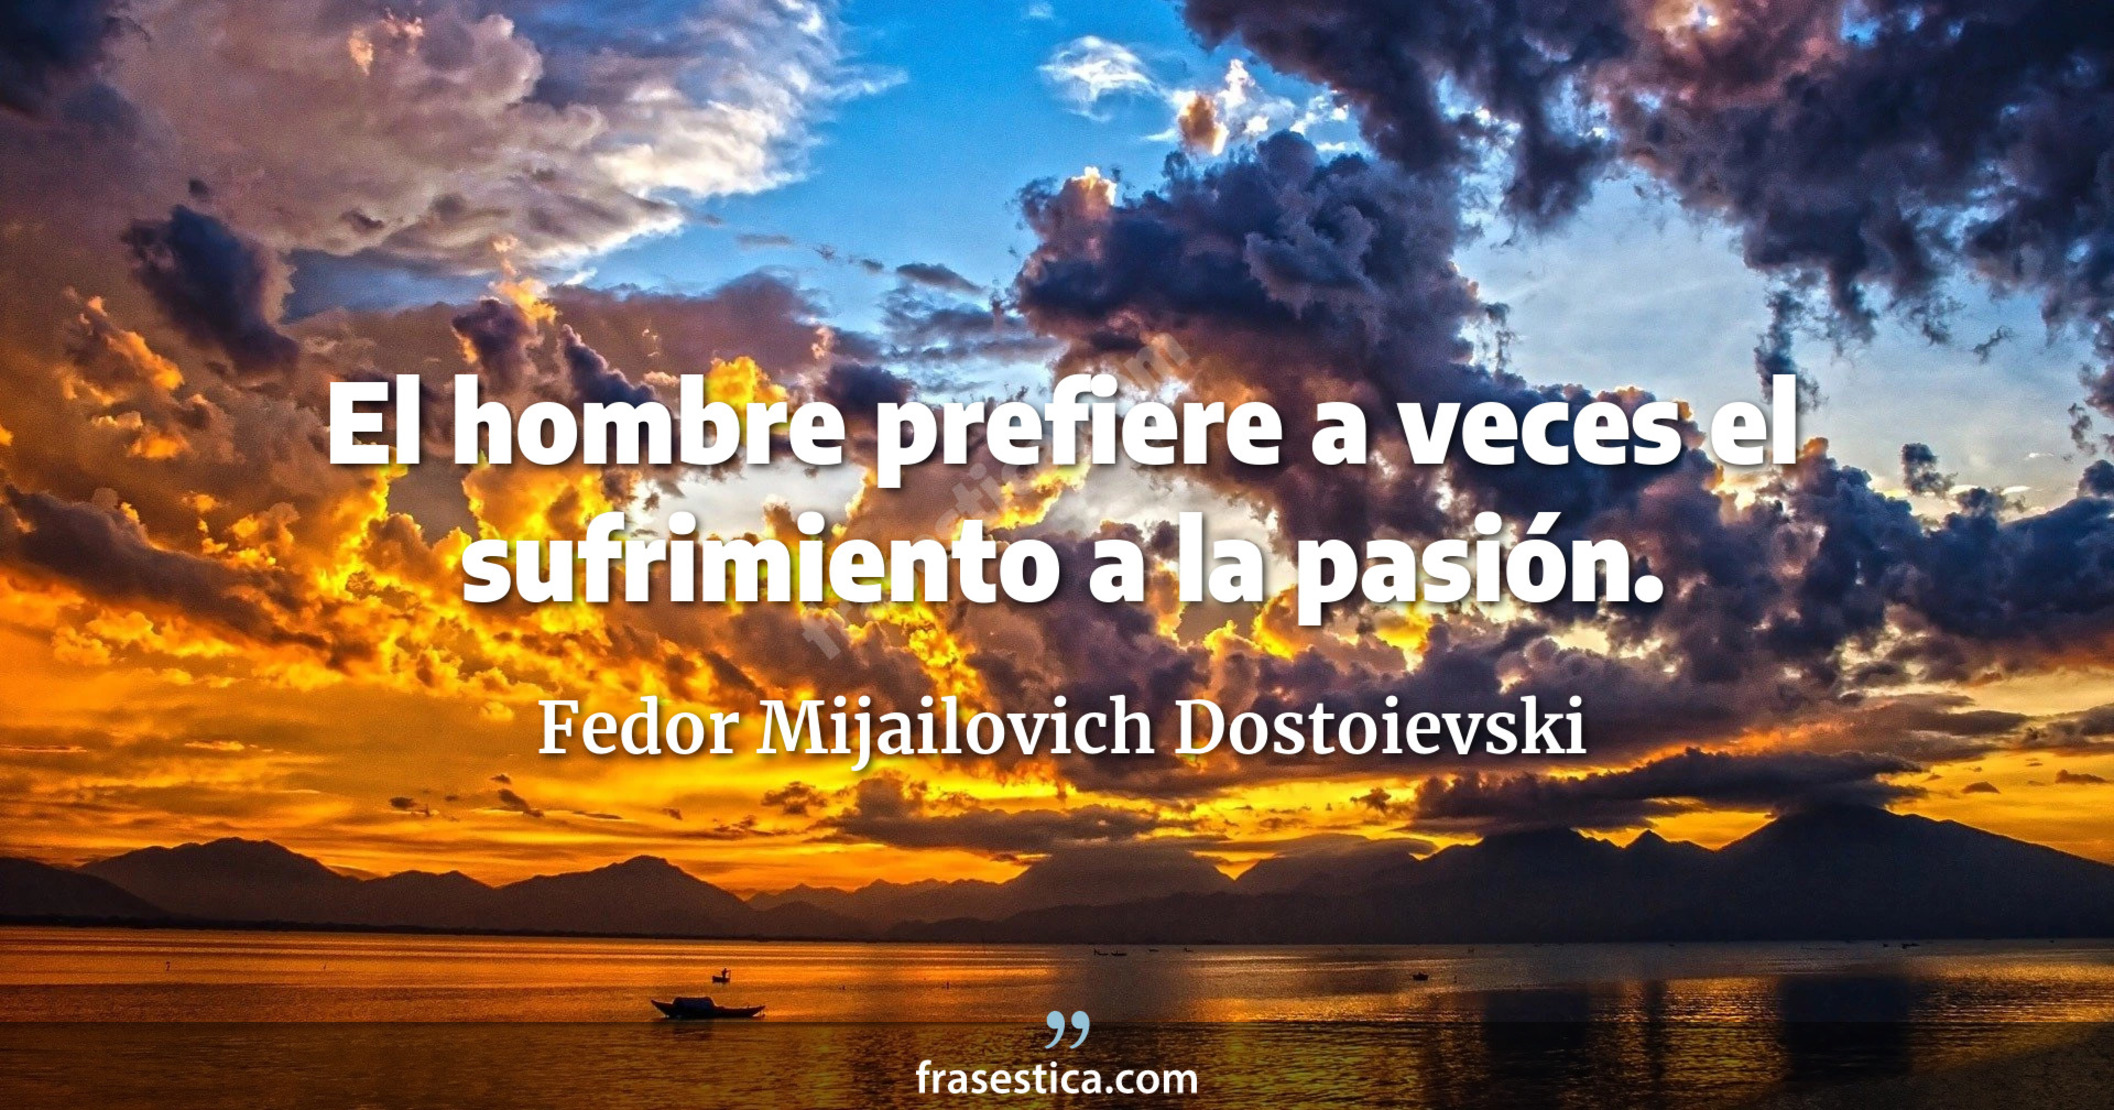 El hombre prefiere a veces el sufrimiento a la pasión. - Fedor Mijailovich Dostoievski